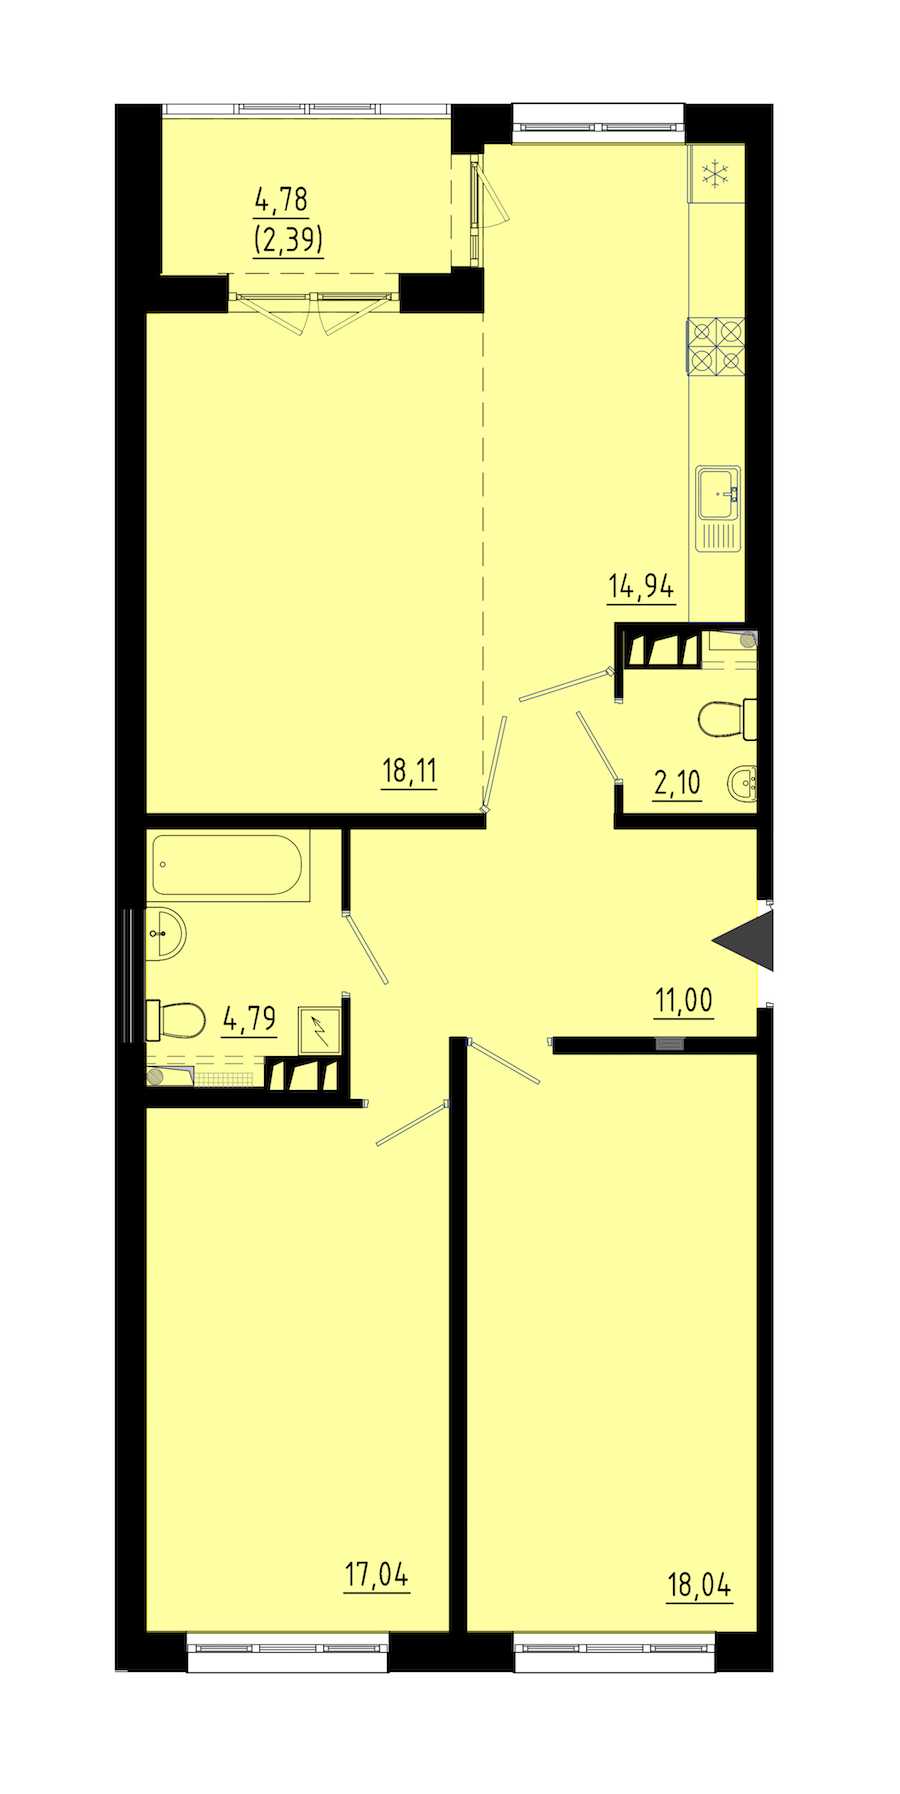 Двухкомнатная квартира в : площадь 86.5 м2 , этаж: 1 – купить в Санкт-Петербурге